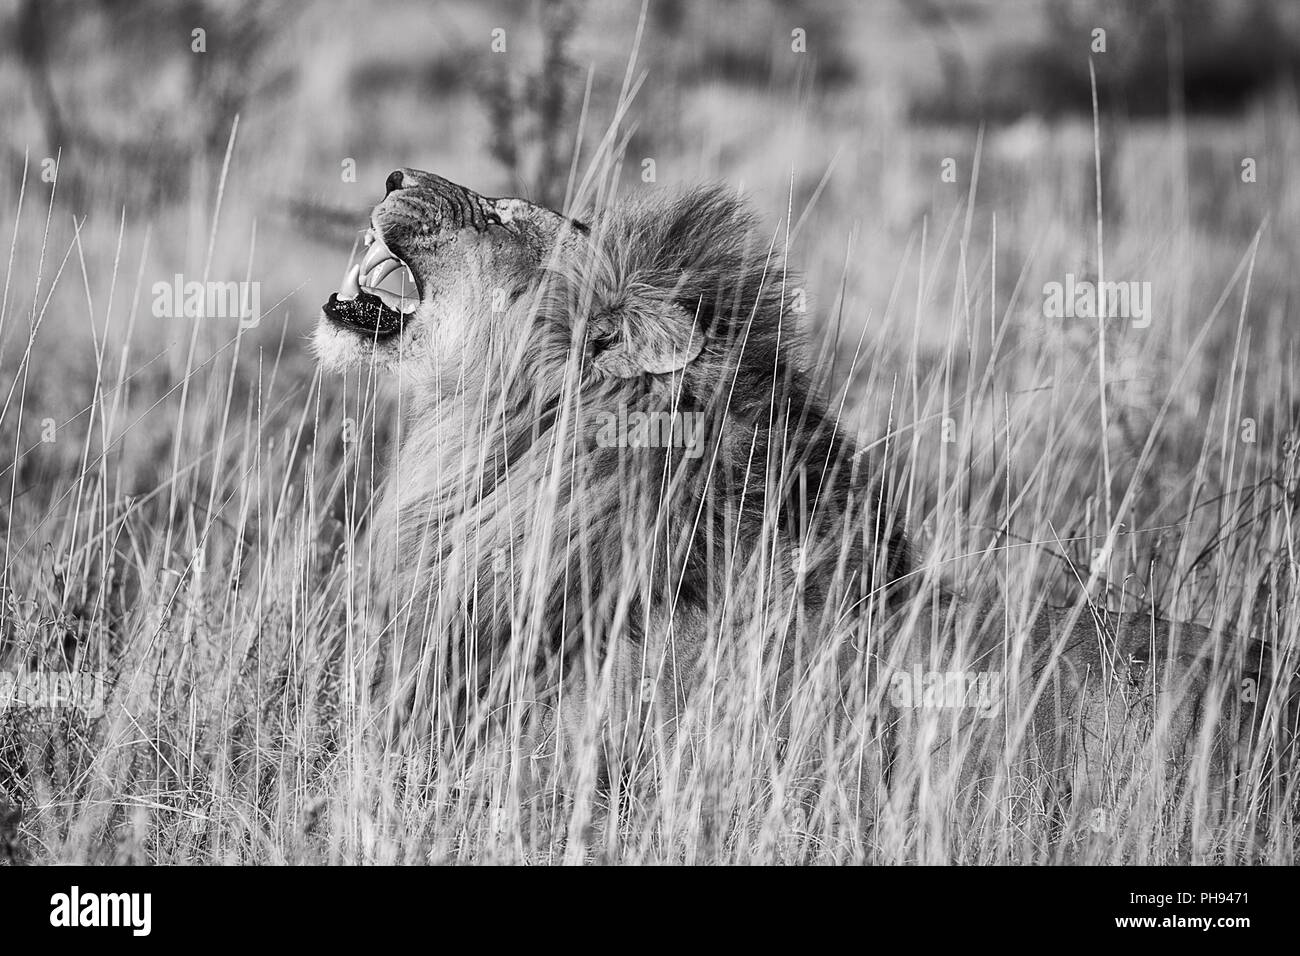 Roaring lion mâle au parc national d'Etosha, Namibie Banque D'Images